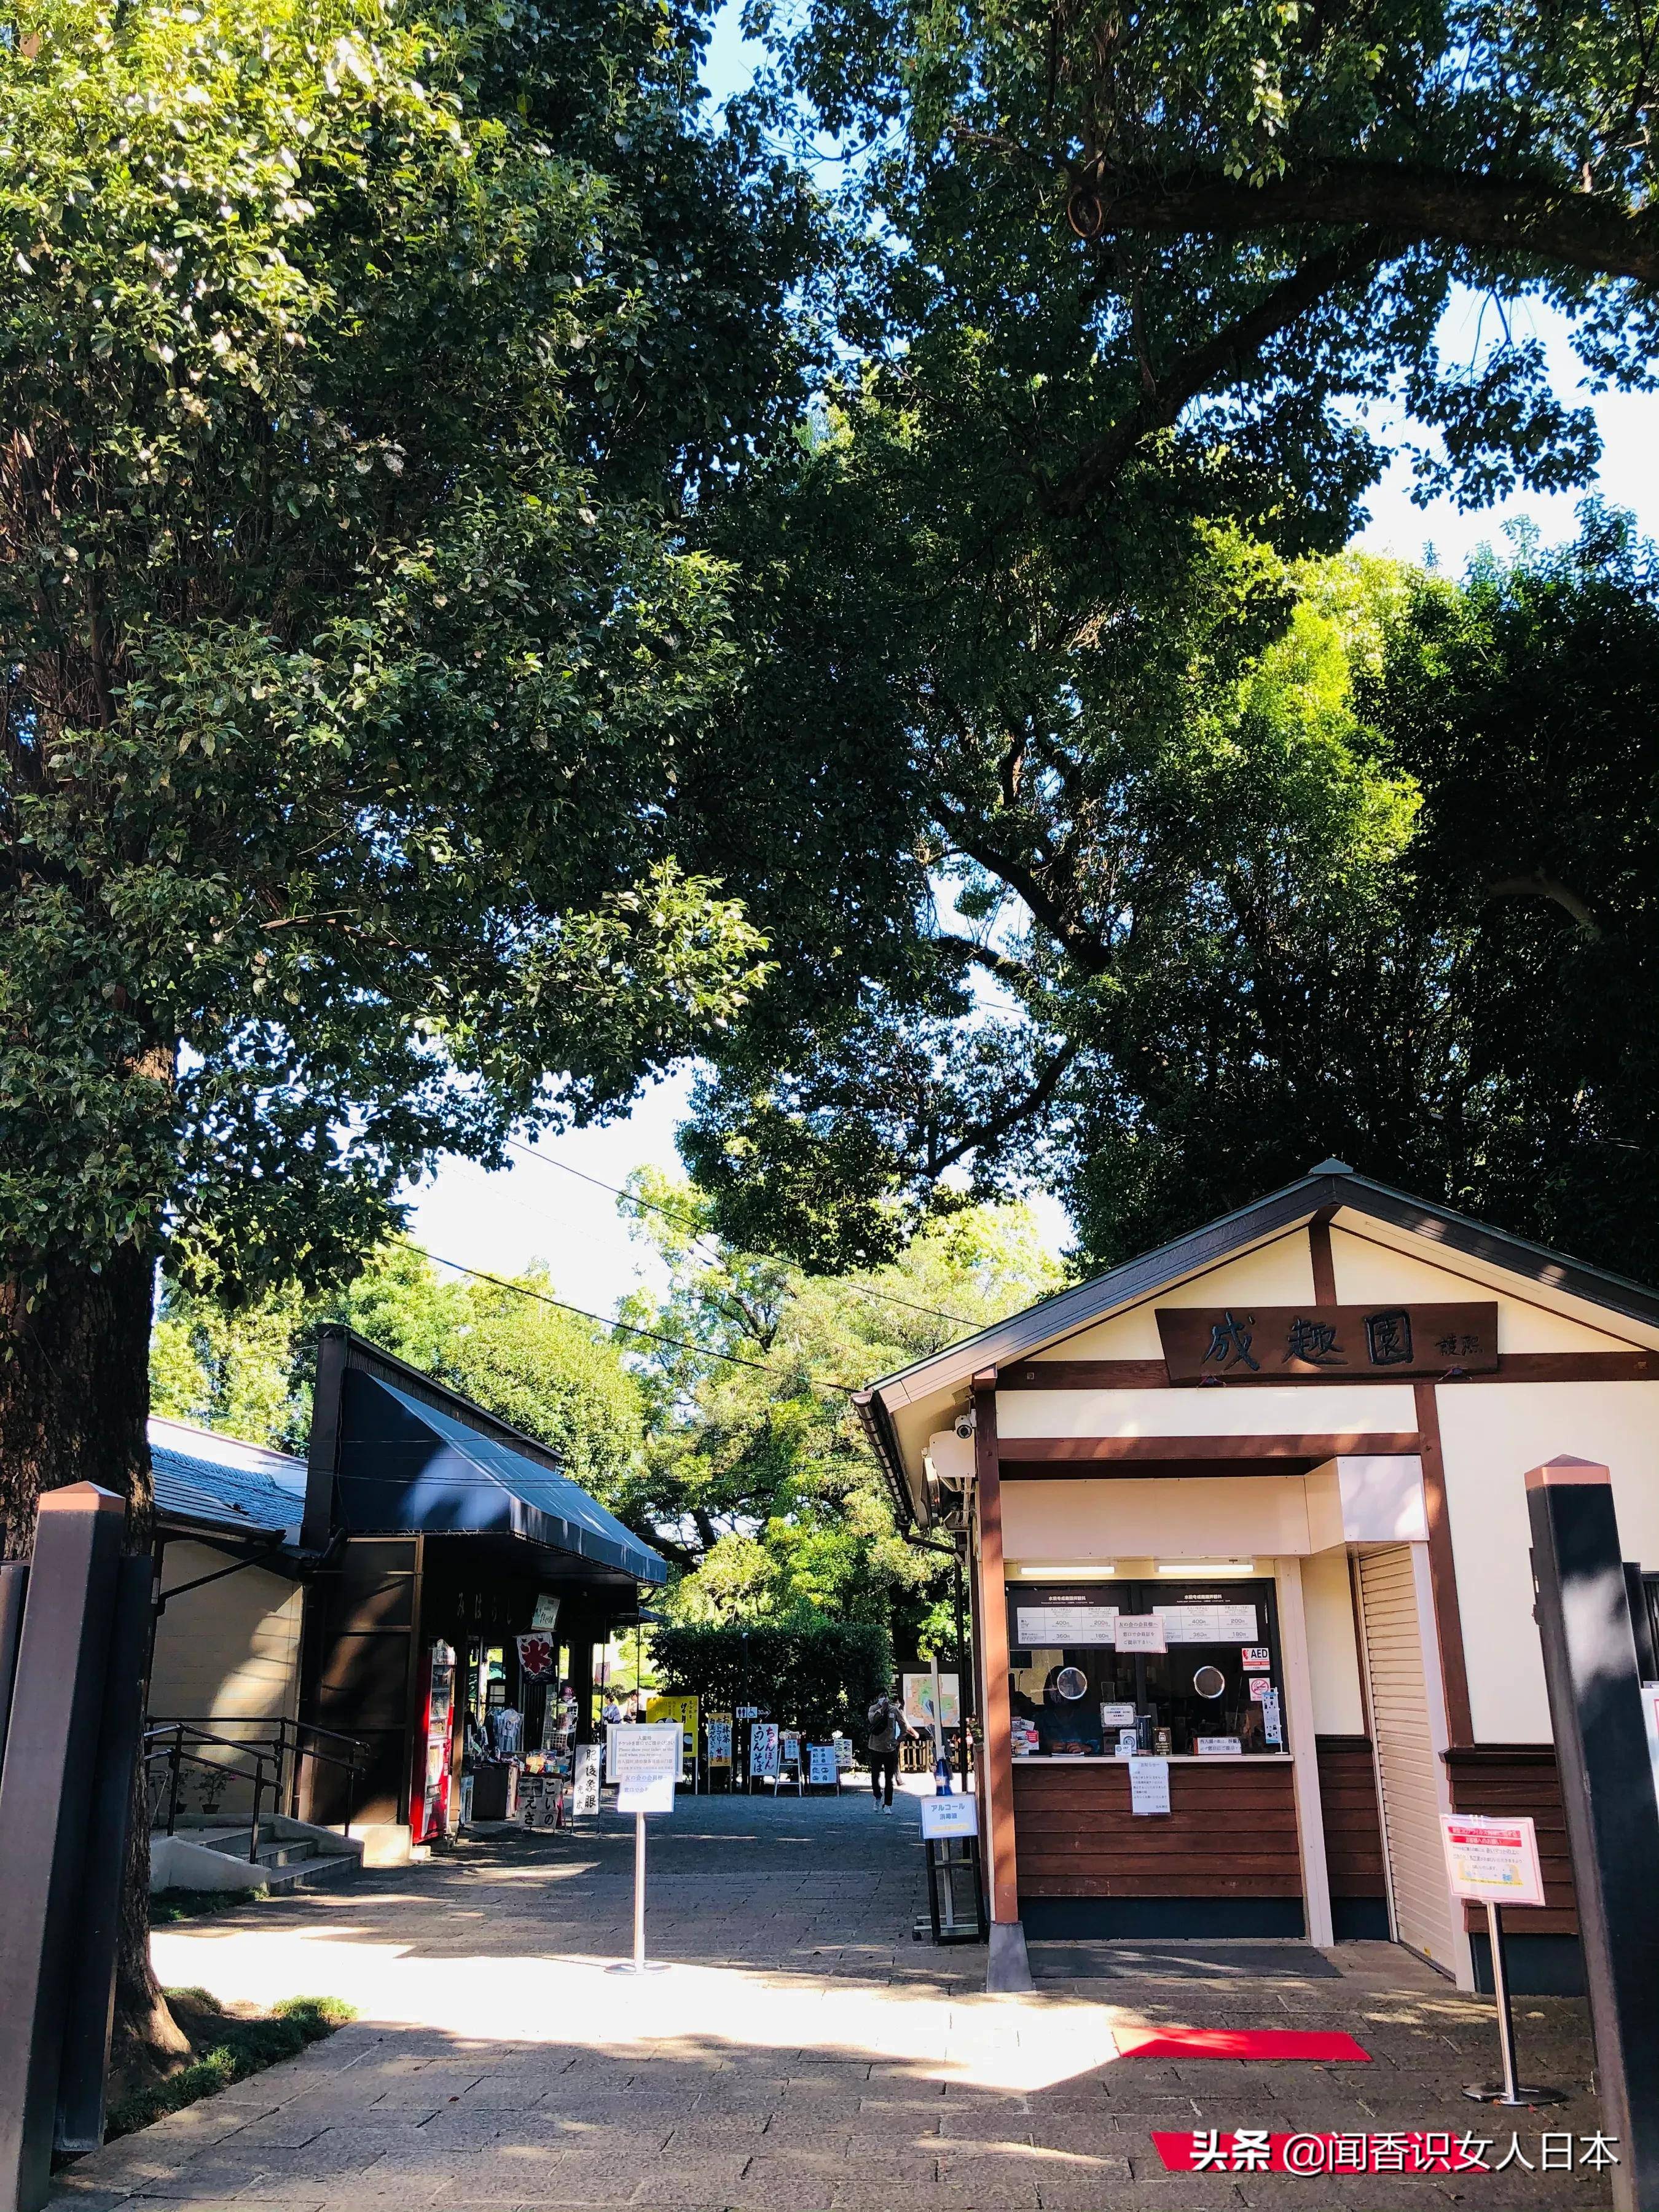 熊本市不被大众所知的水前寺成趣园，取自陶渊明的诗词“成趣”